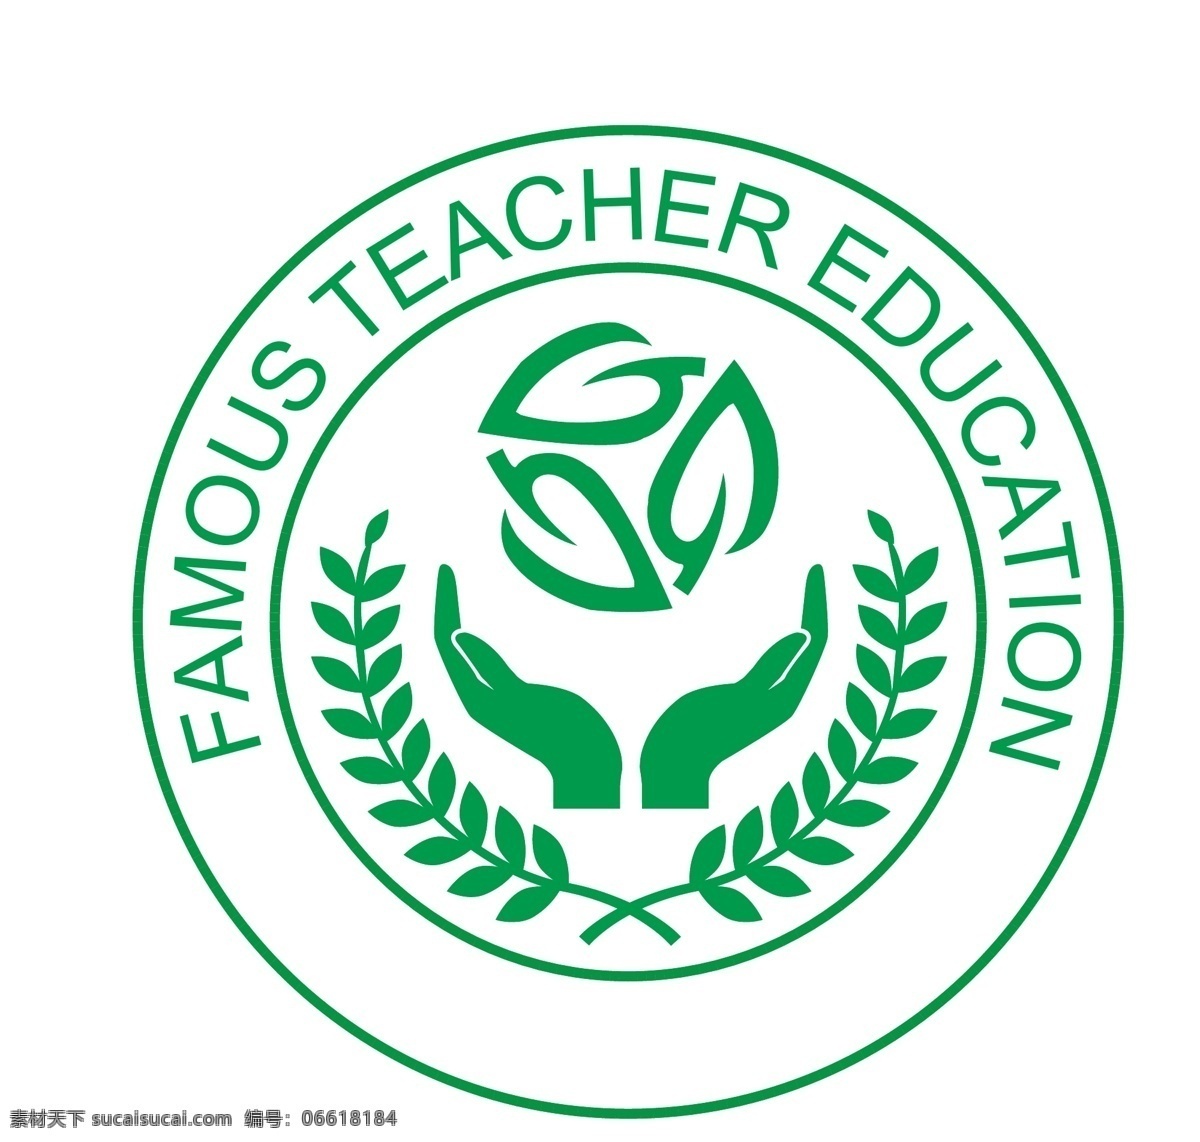 教育logo 教育 logo 绿色 圆形 高校 标志图标 企业 标志